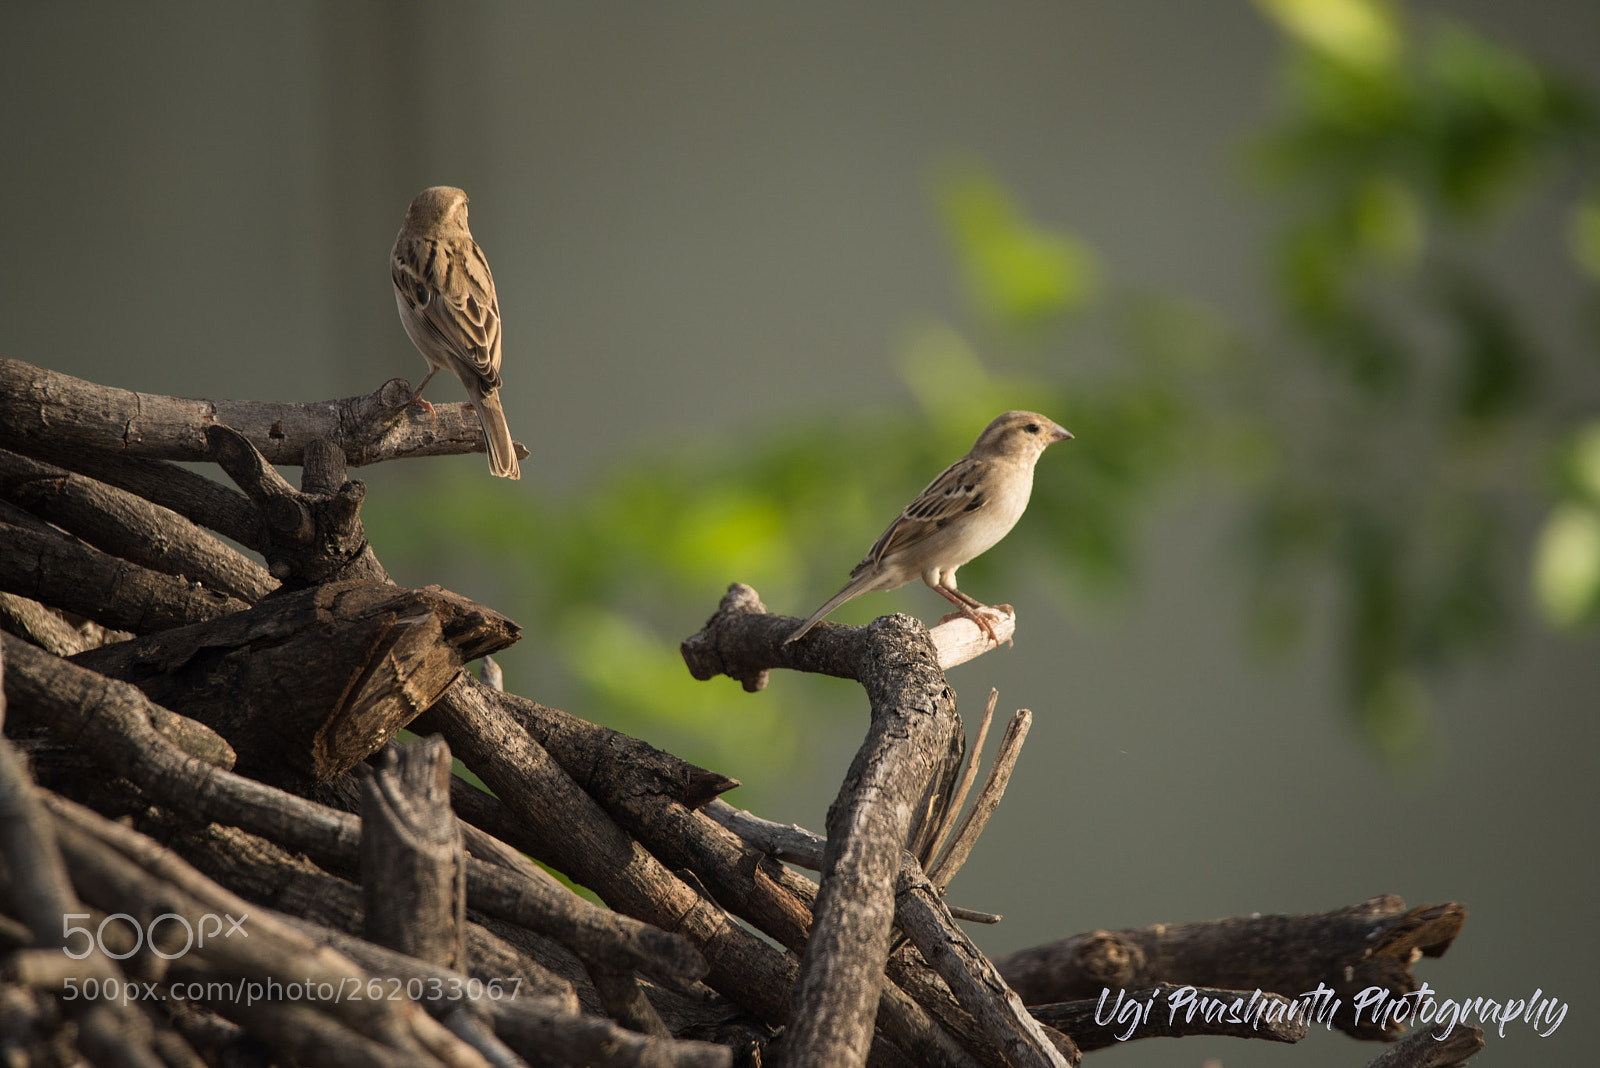 Nikon D810 sample photo. Indian sparrow photography